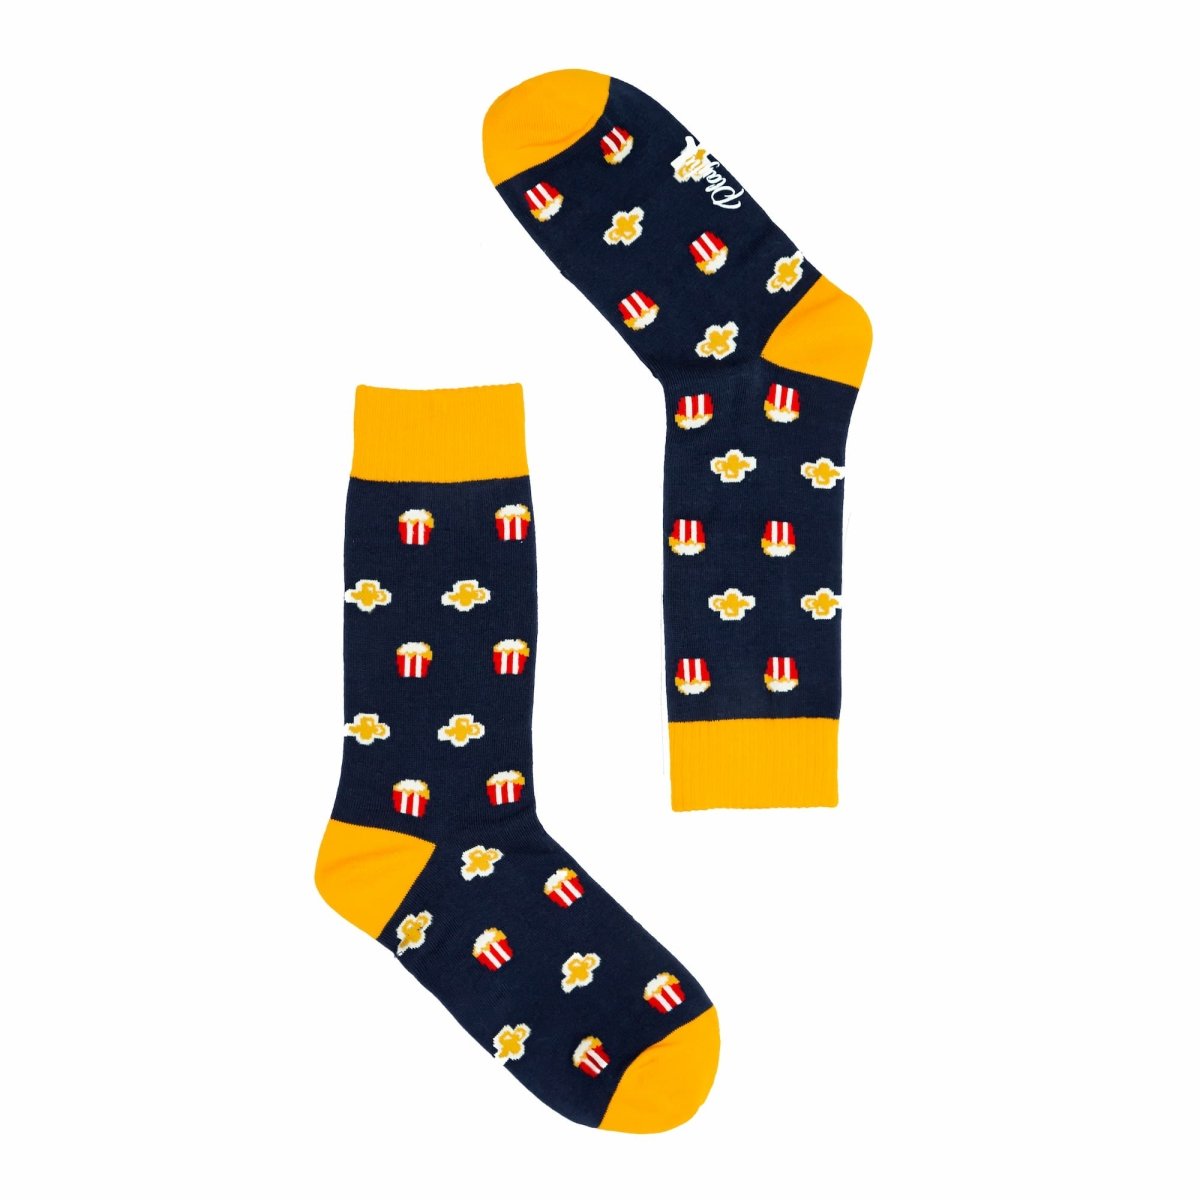 Popcorn Socks by Playful - LOVINGLY SIGNED (HK)